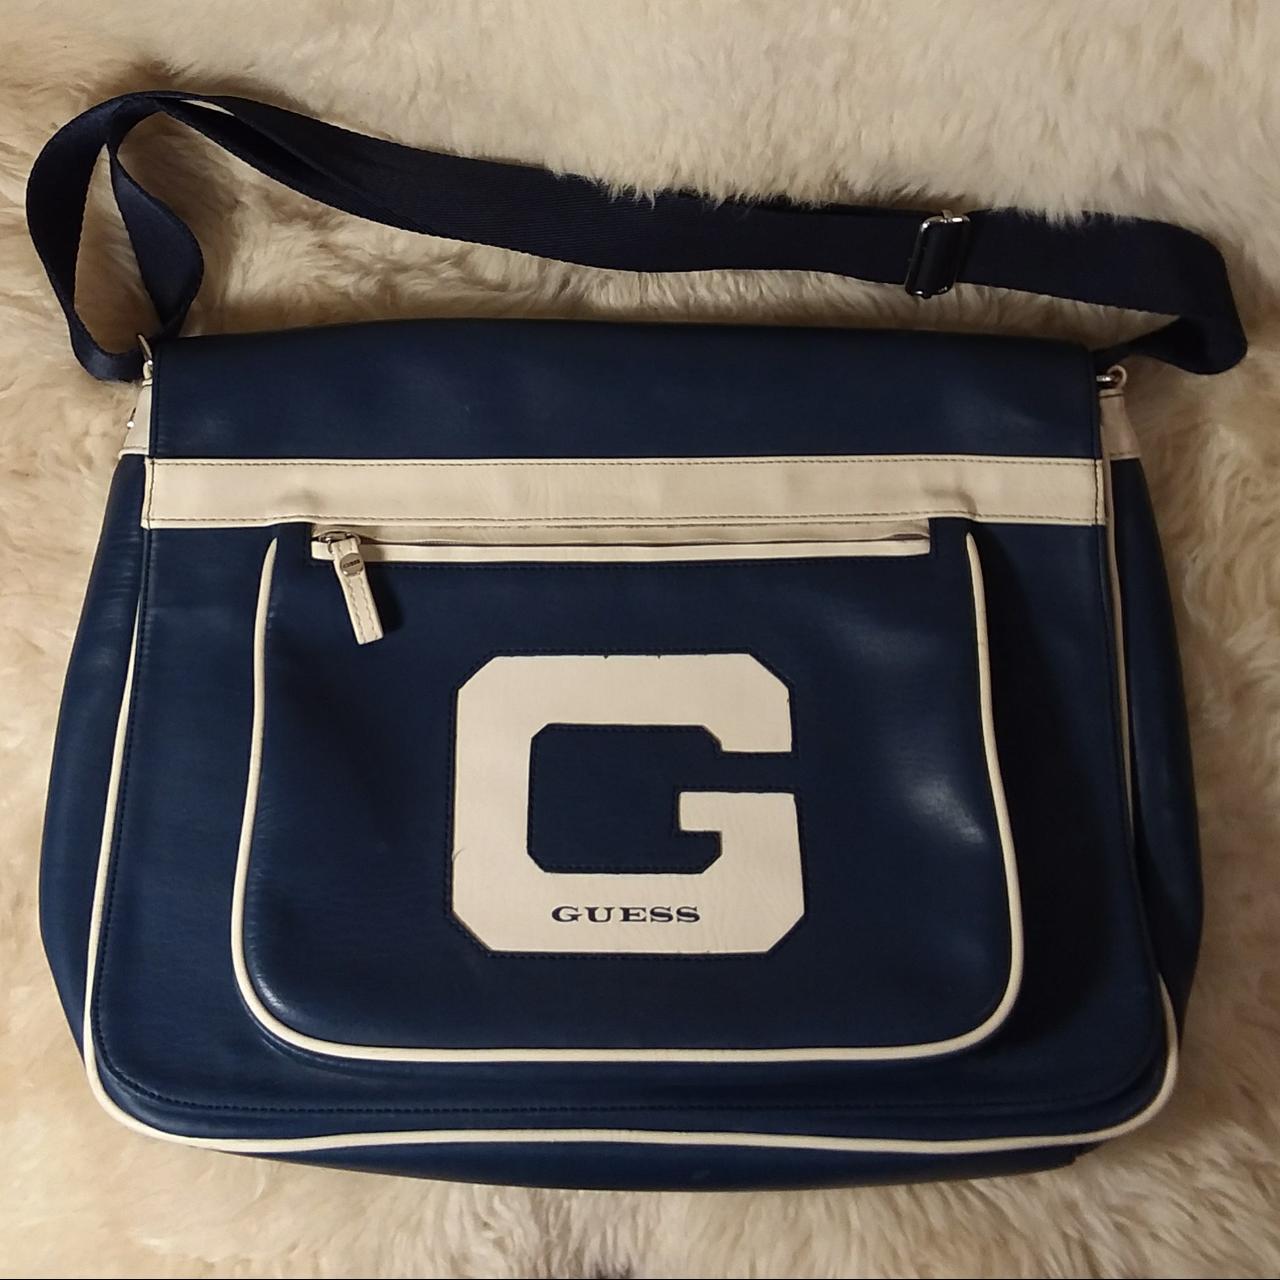 Rare Vintage GUESS travel bag. Blue vinyl with off... - Depop